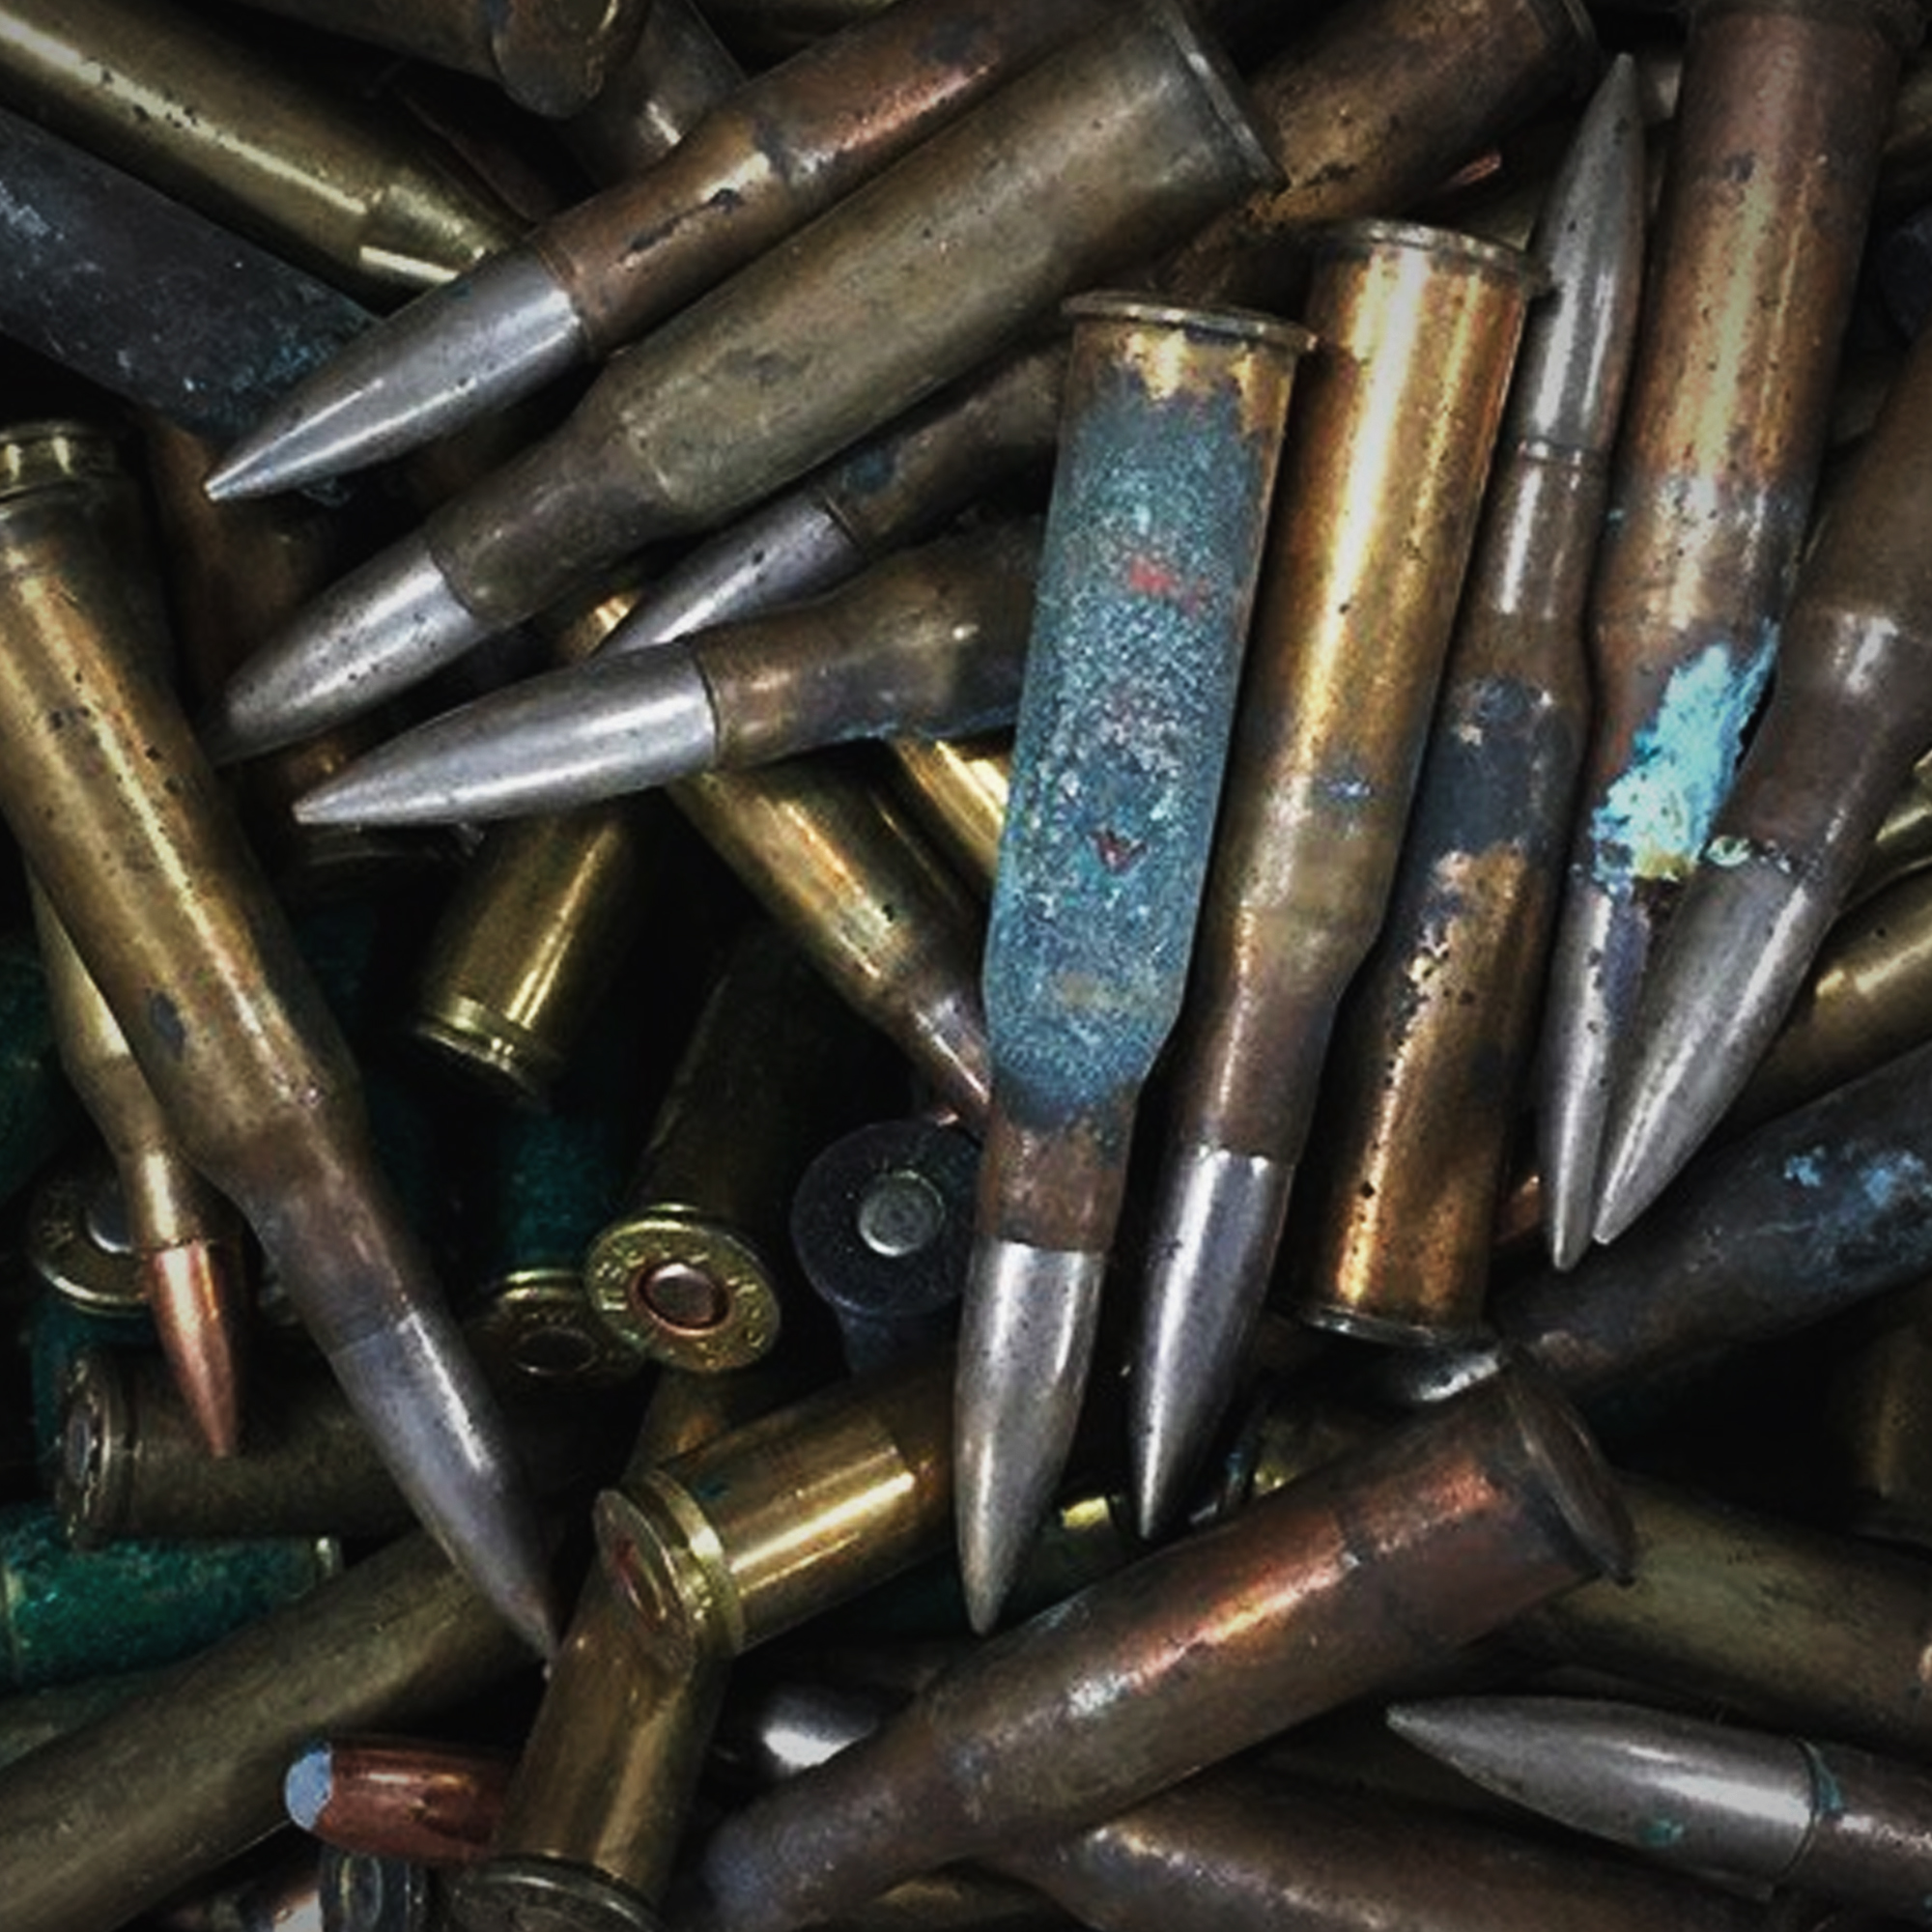 Damaged ammunition - Bad ammo